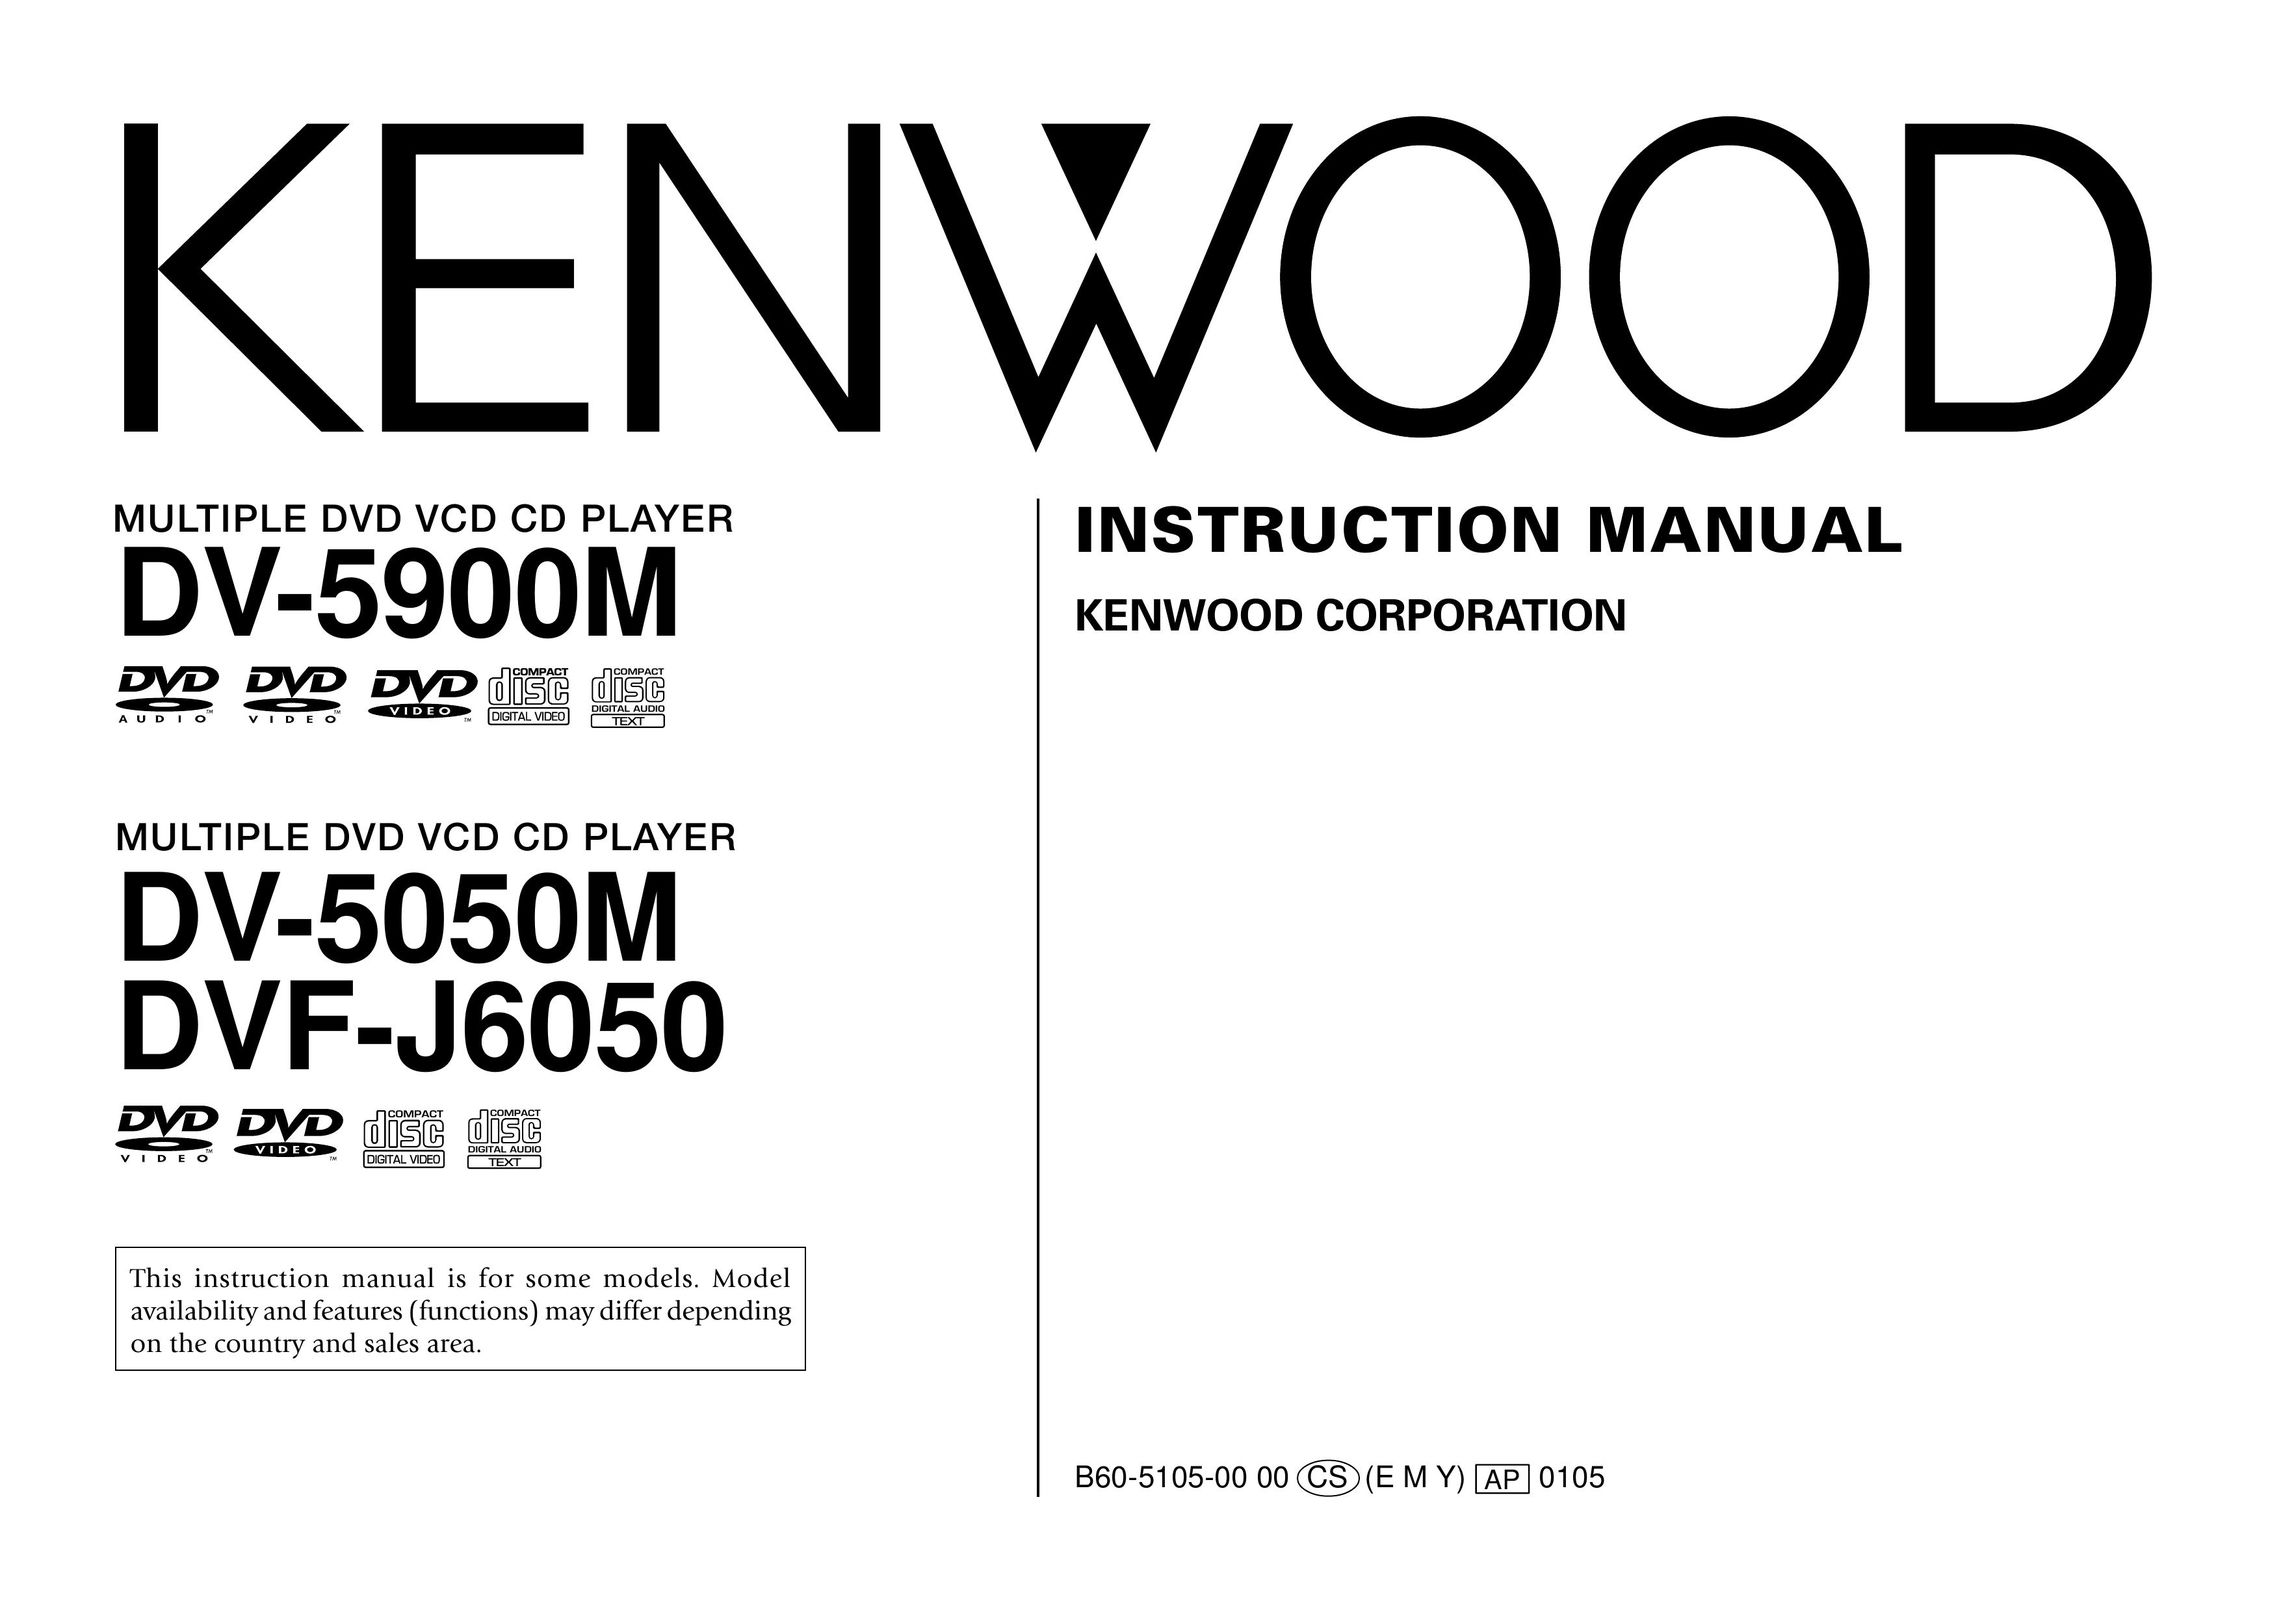 Kenwood DVF-J6050 DVD Player User Manual